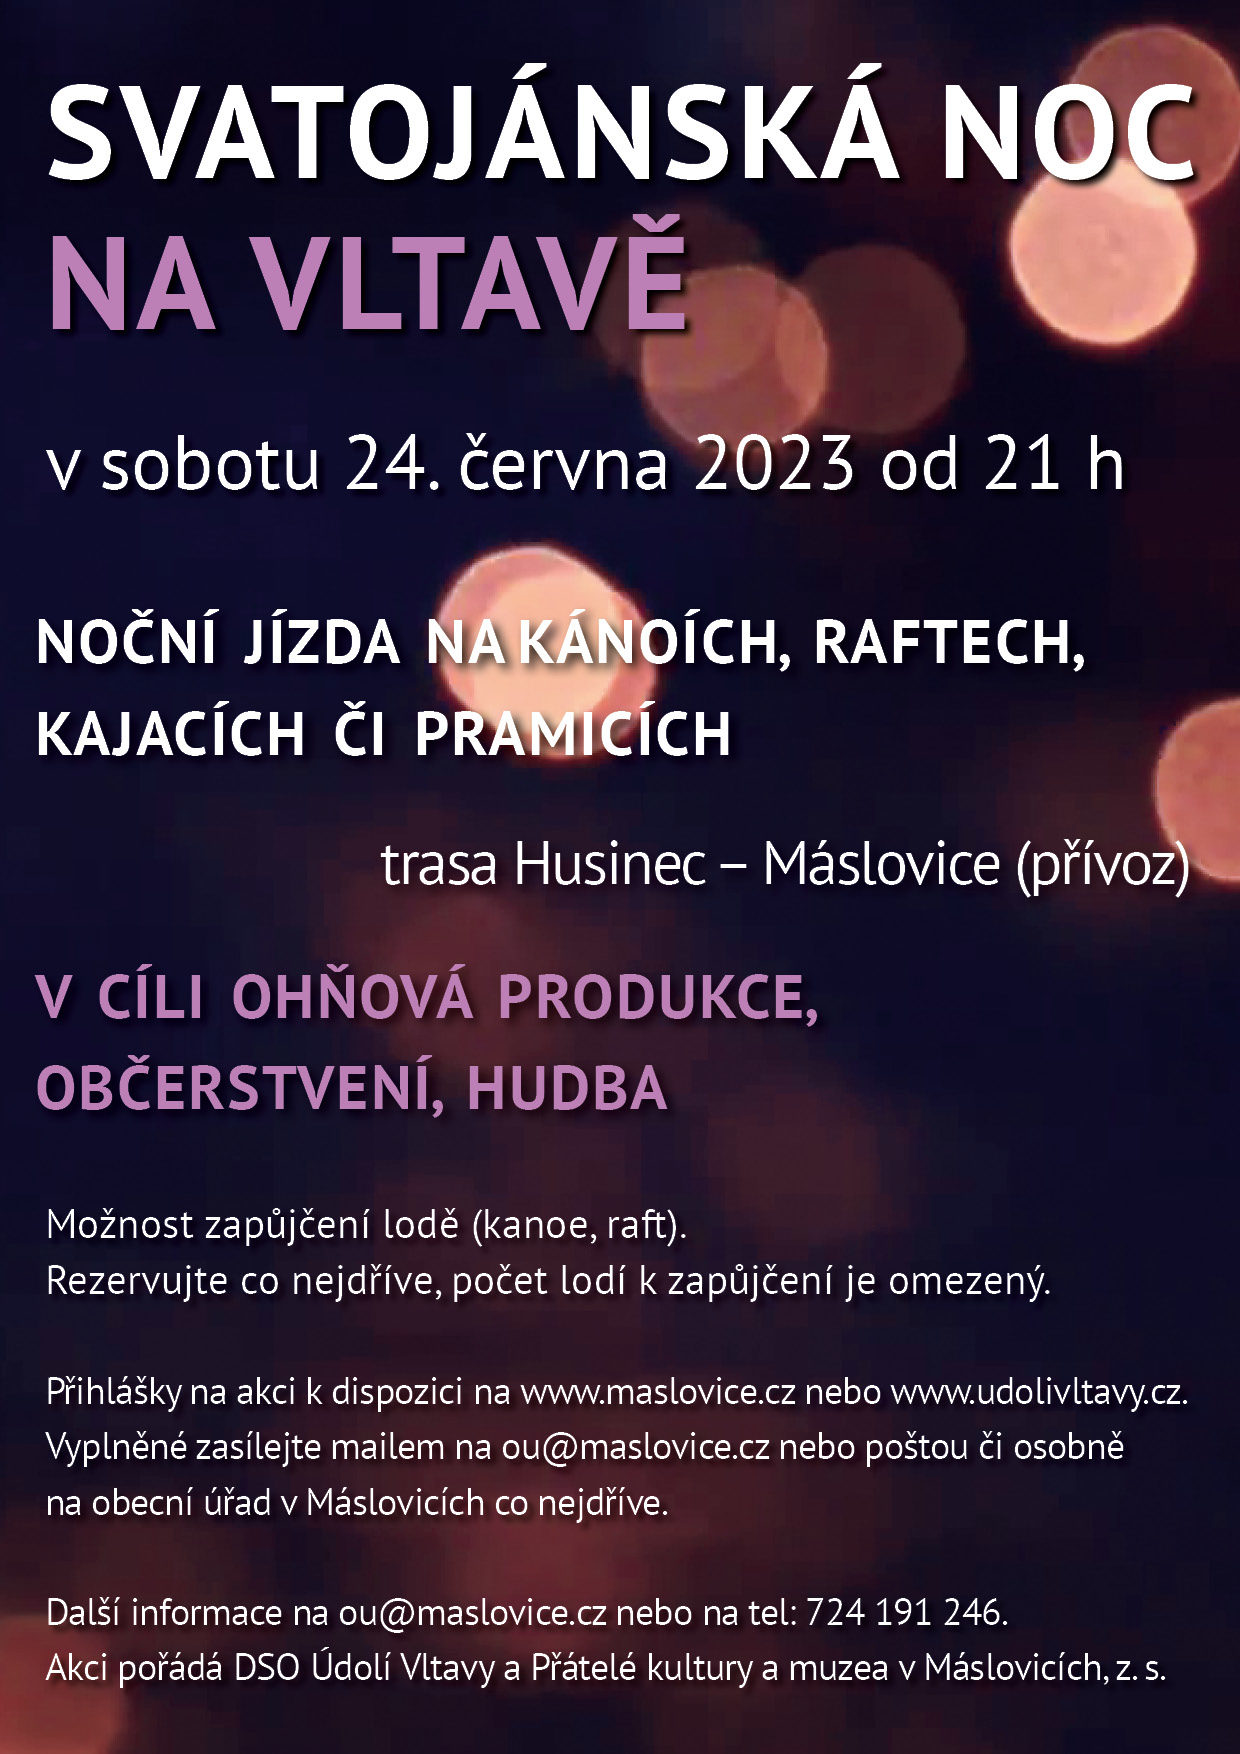 Svatojánská noc na Vltavě 2023